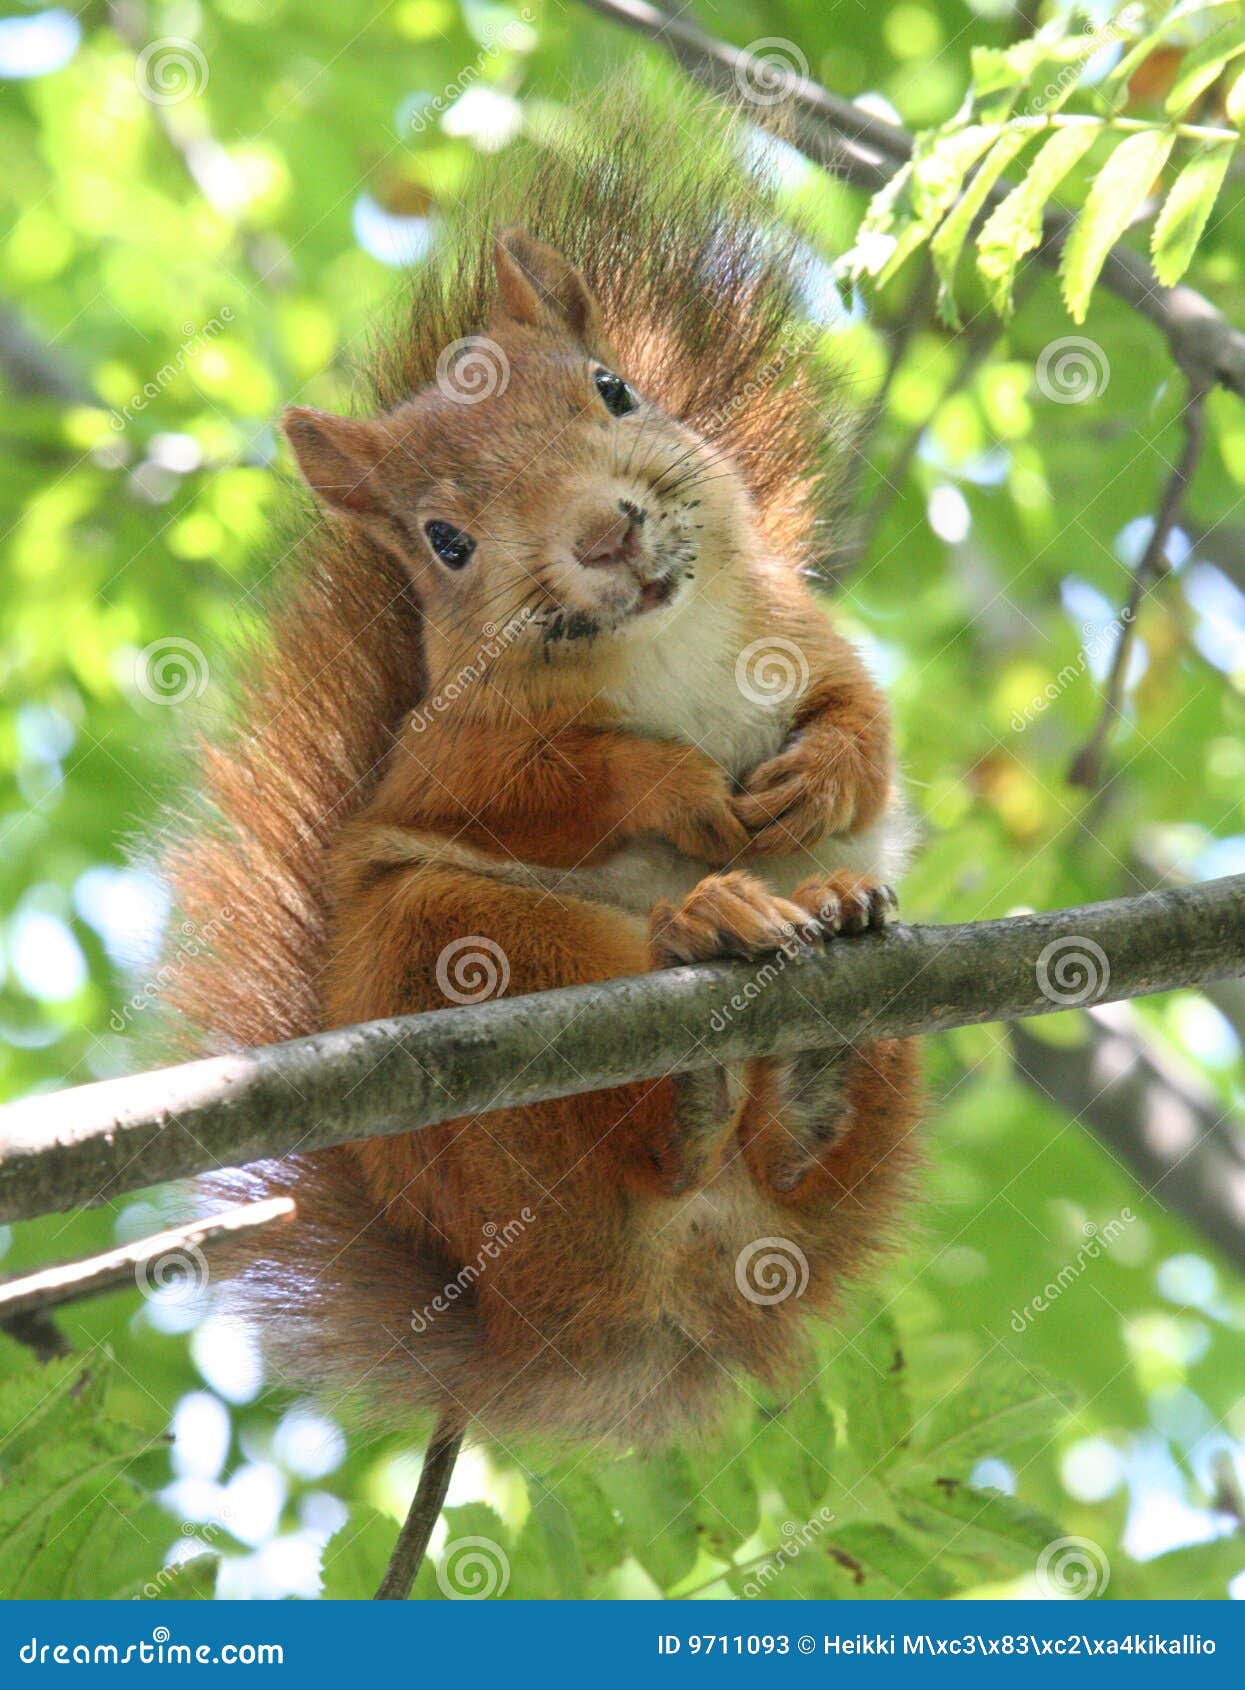 34 eichhörnchen bilder kostenlos  besten bilder von